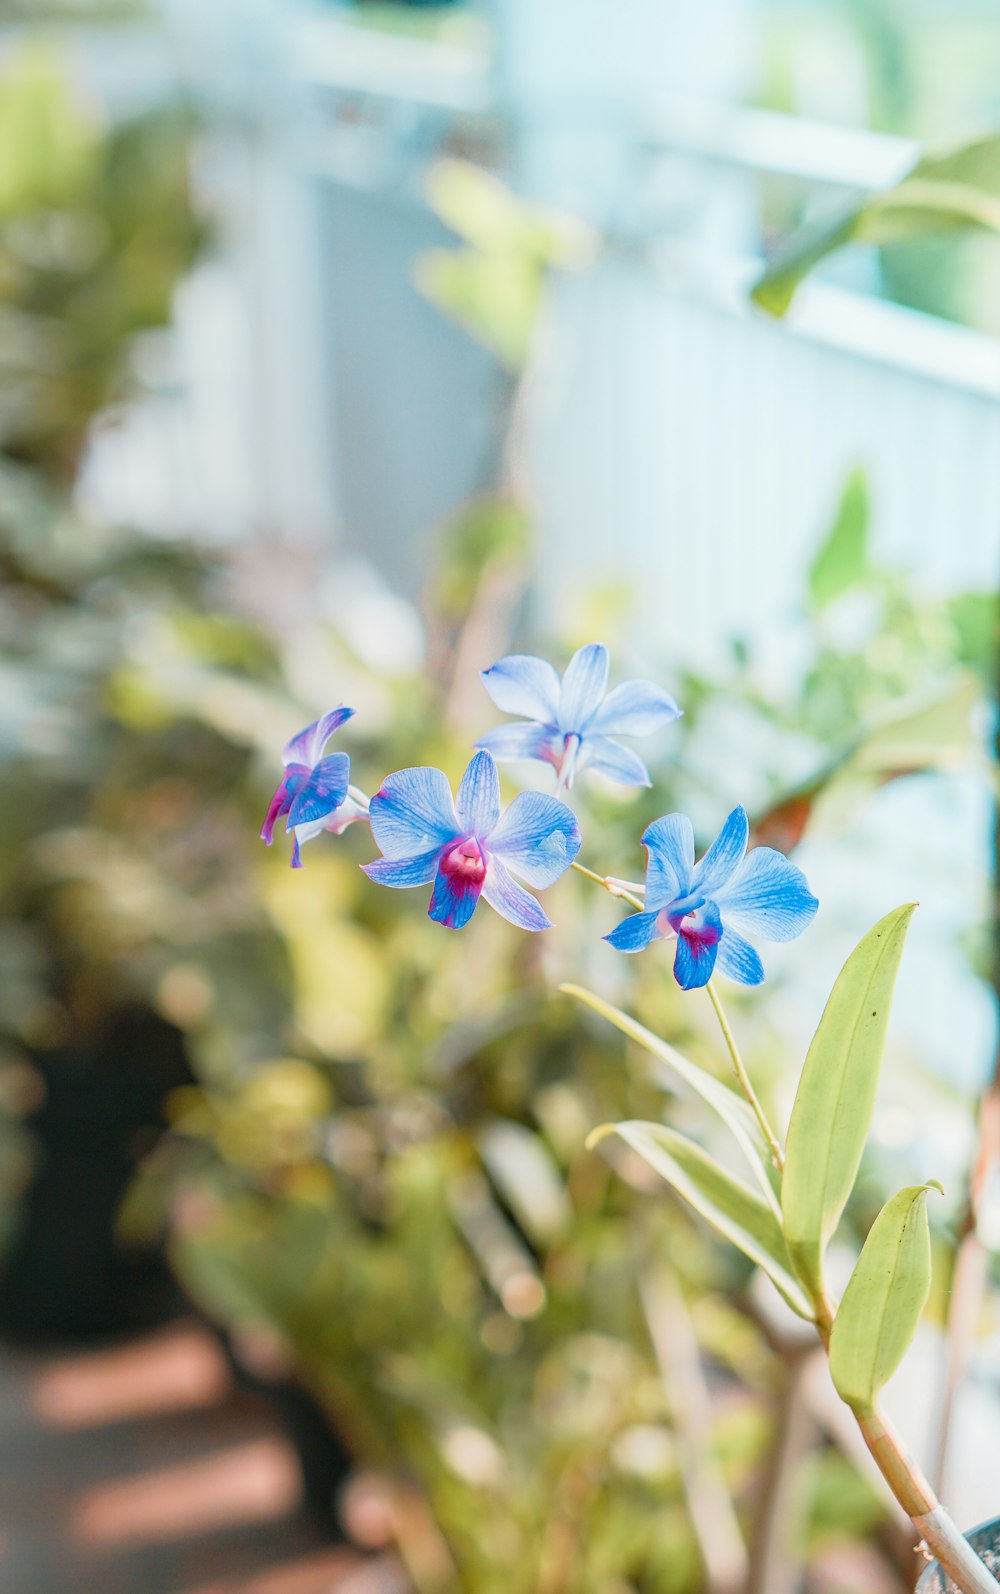 blue and white flower in tilt shift lens